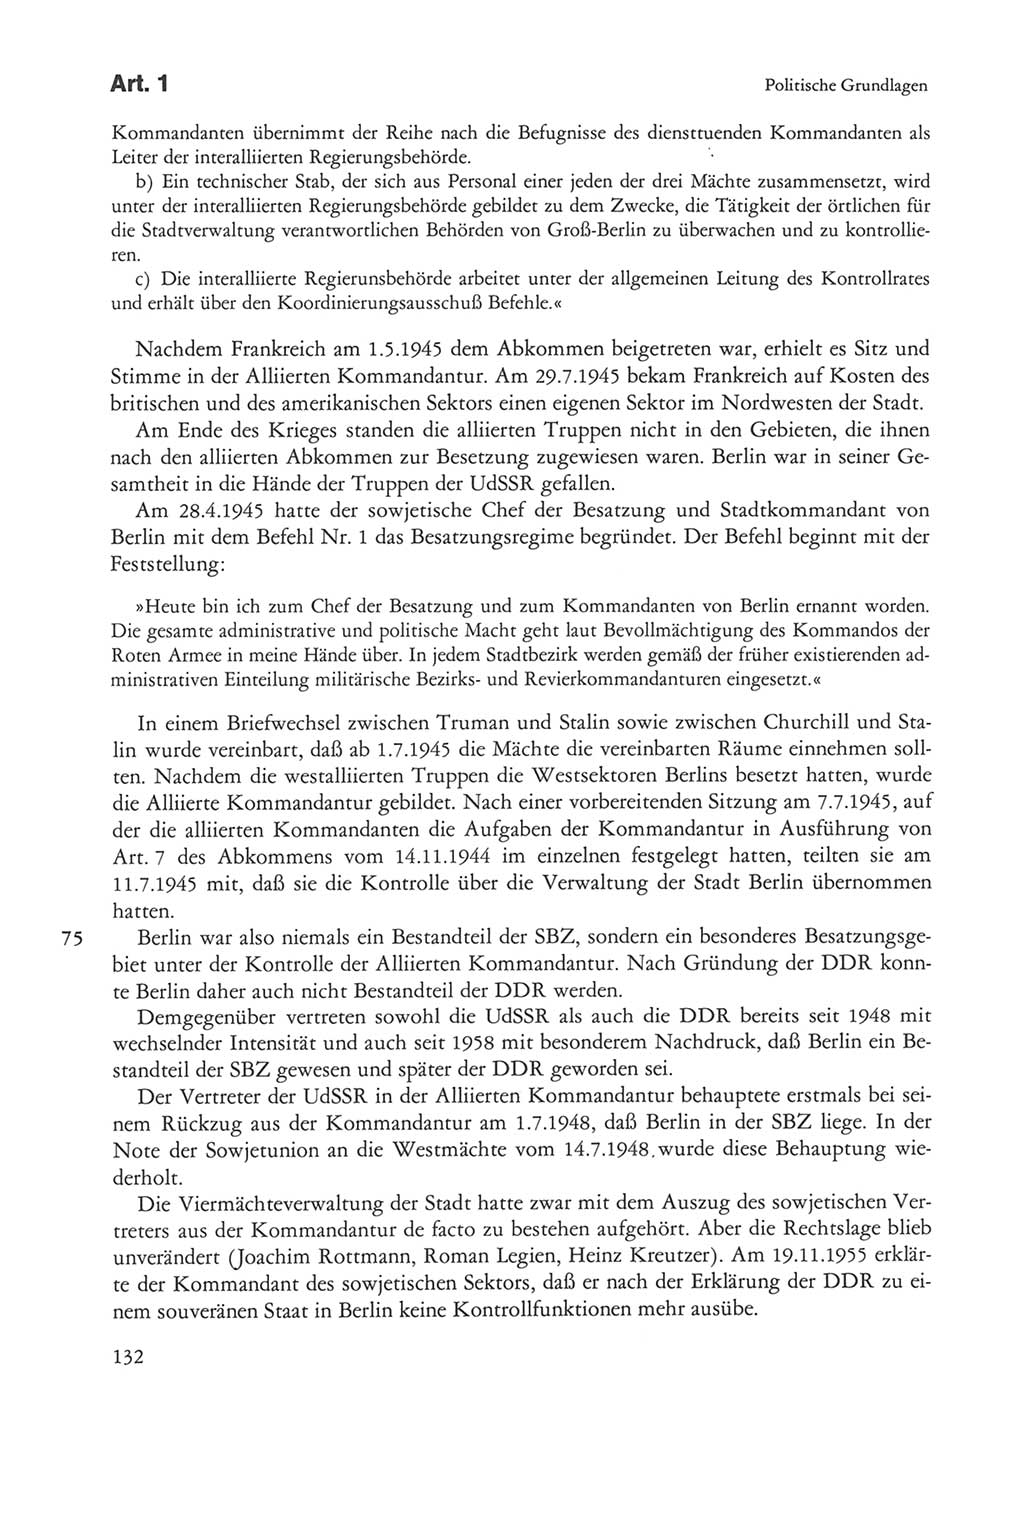 Die sozialistische Verfassung der Deutschen Demokratischen Republik (DDR), Kommentar 1982, Seite 132 (Soz. Verf. DDR Komm. 1982, S. 132)